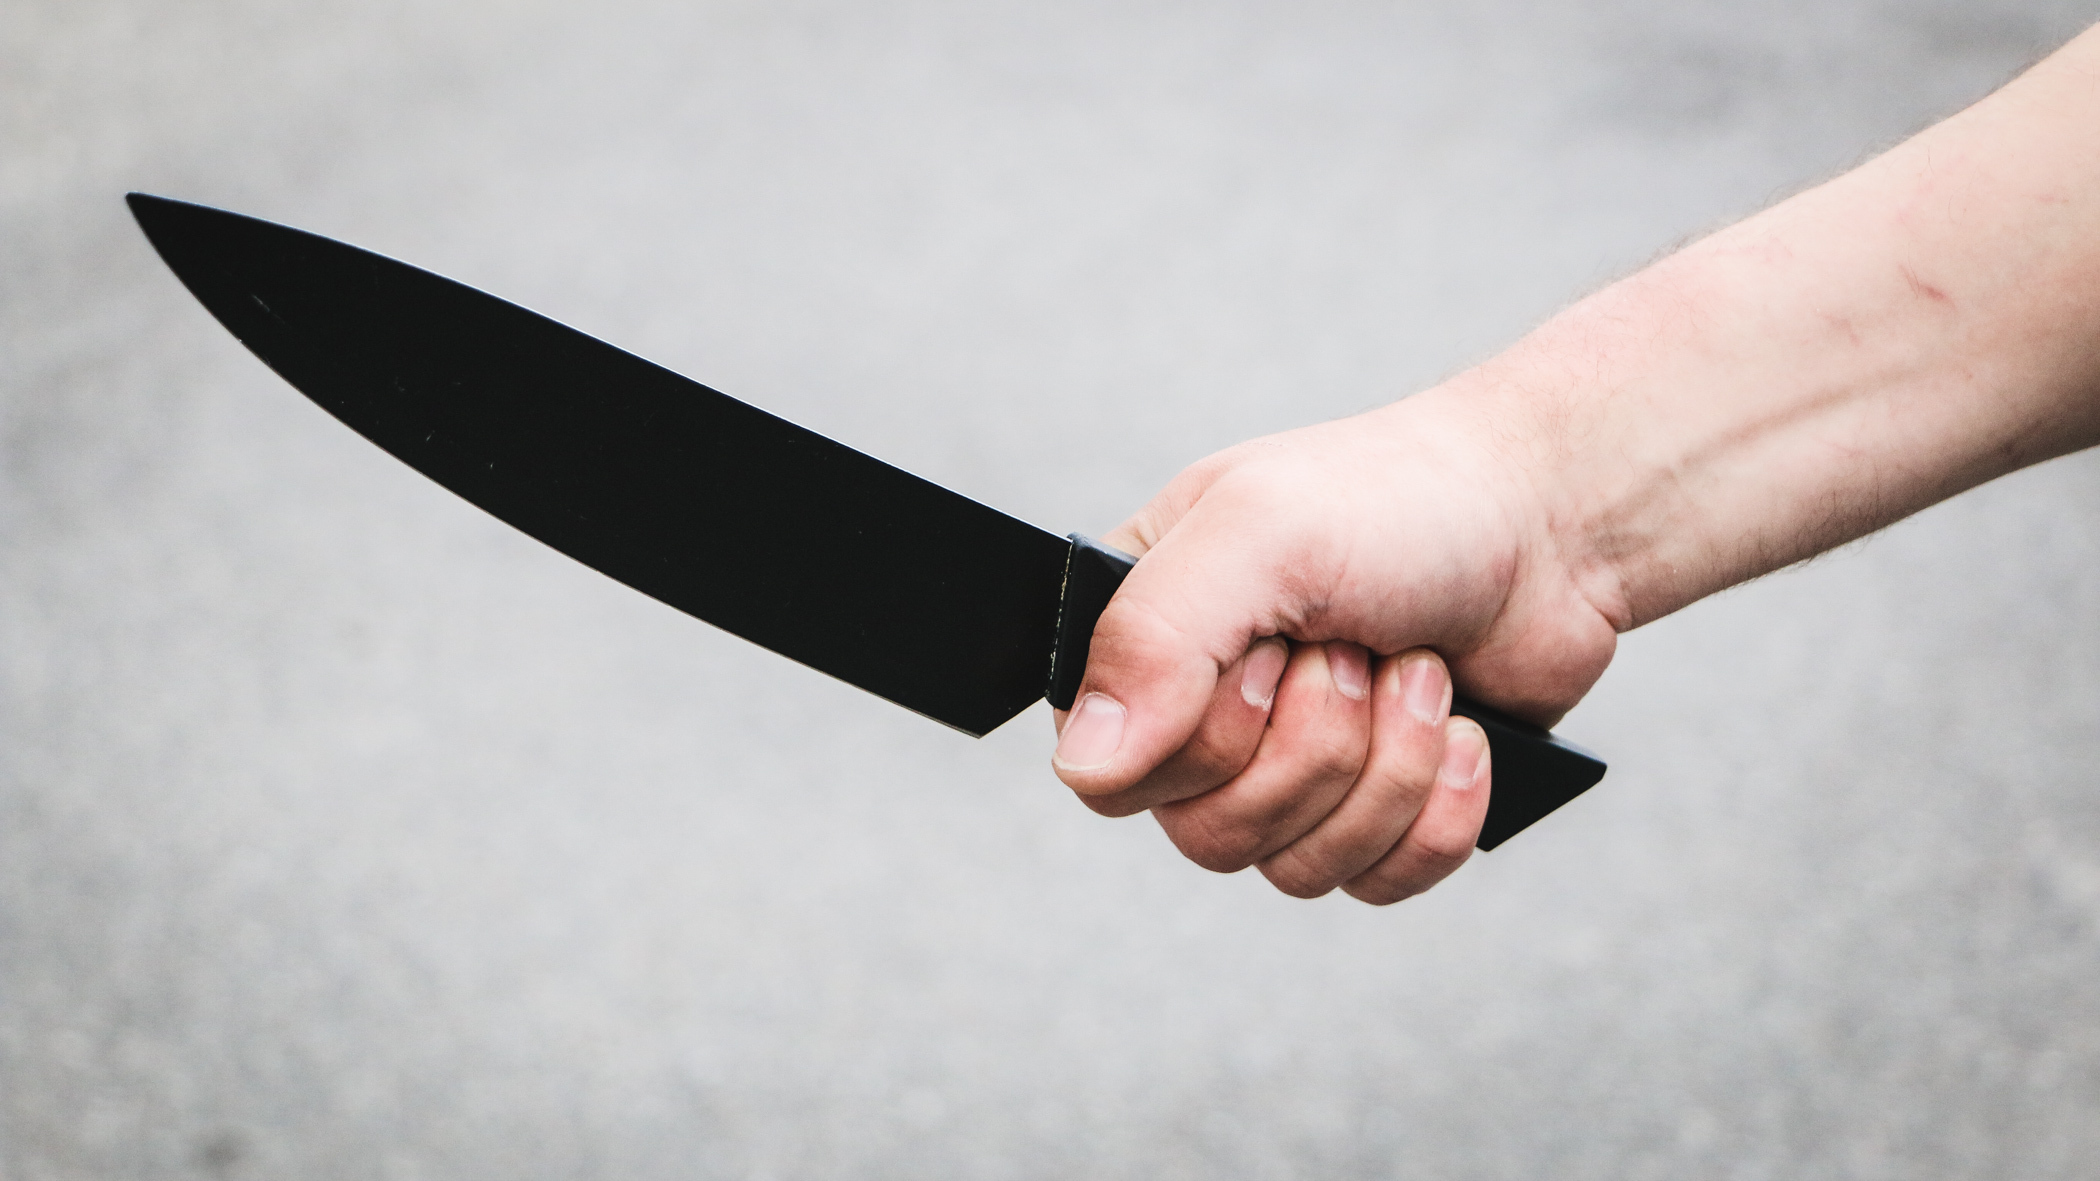 23-летний невменяемый мужчина напал с ножом на знакомого в подъезде дома в Ижевске